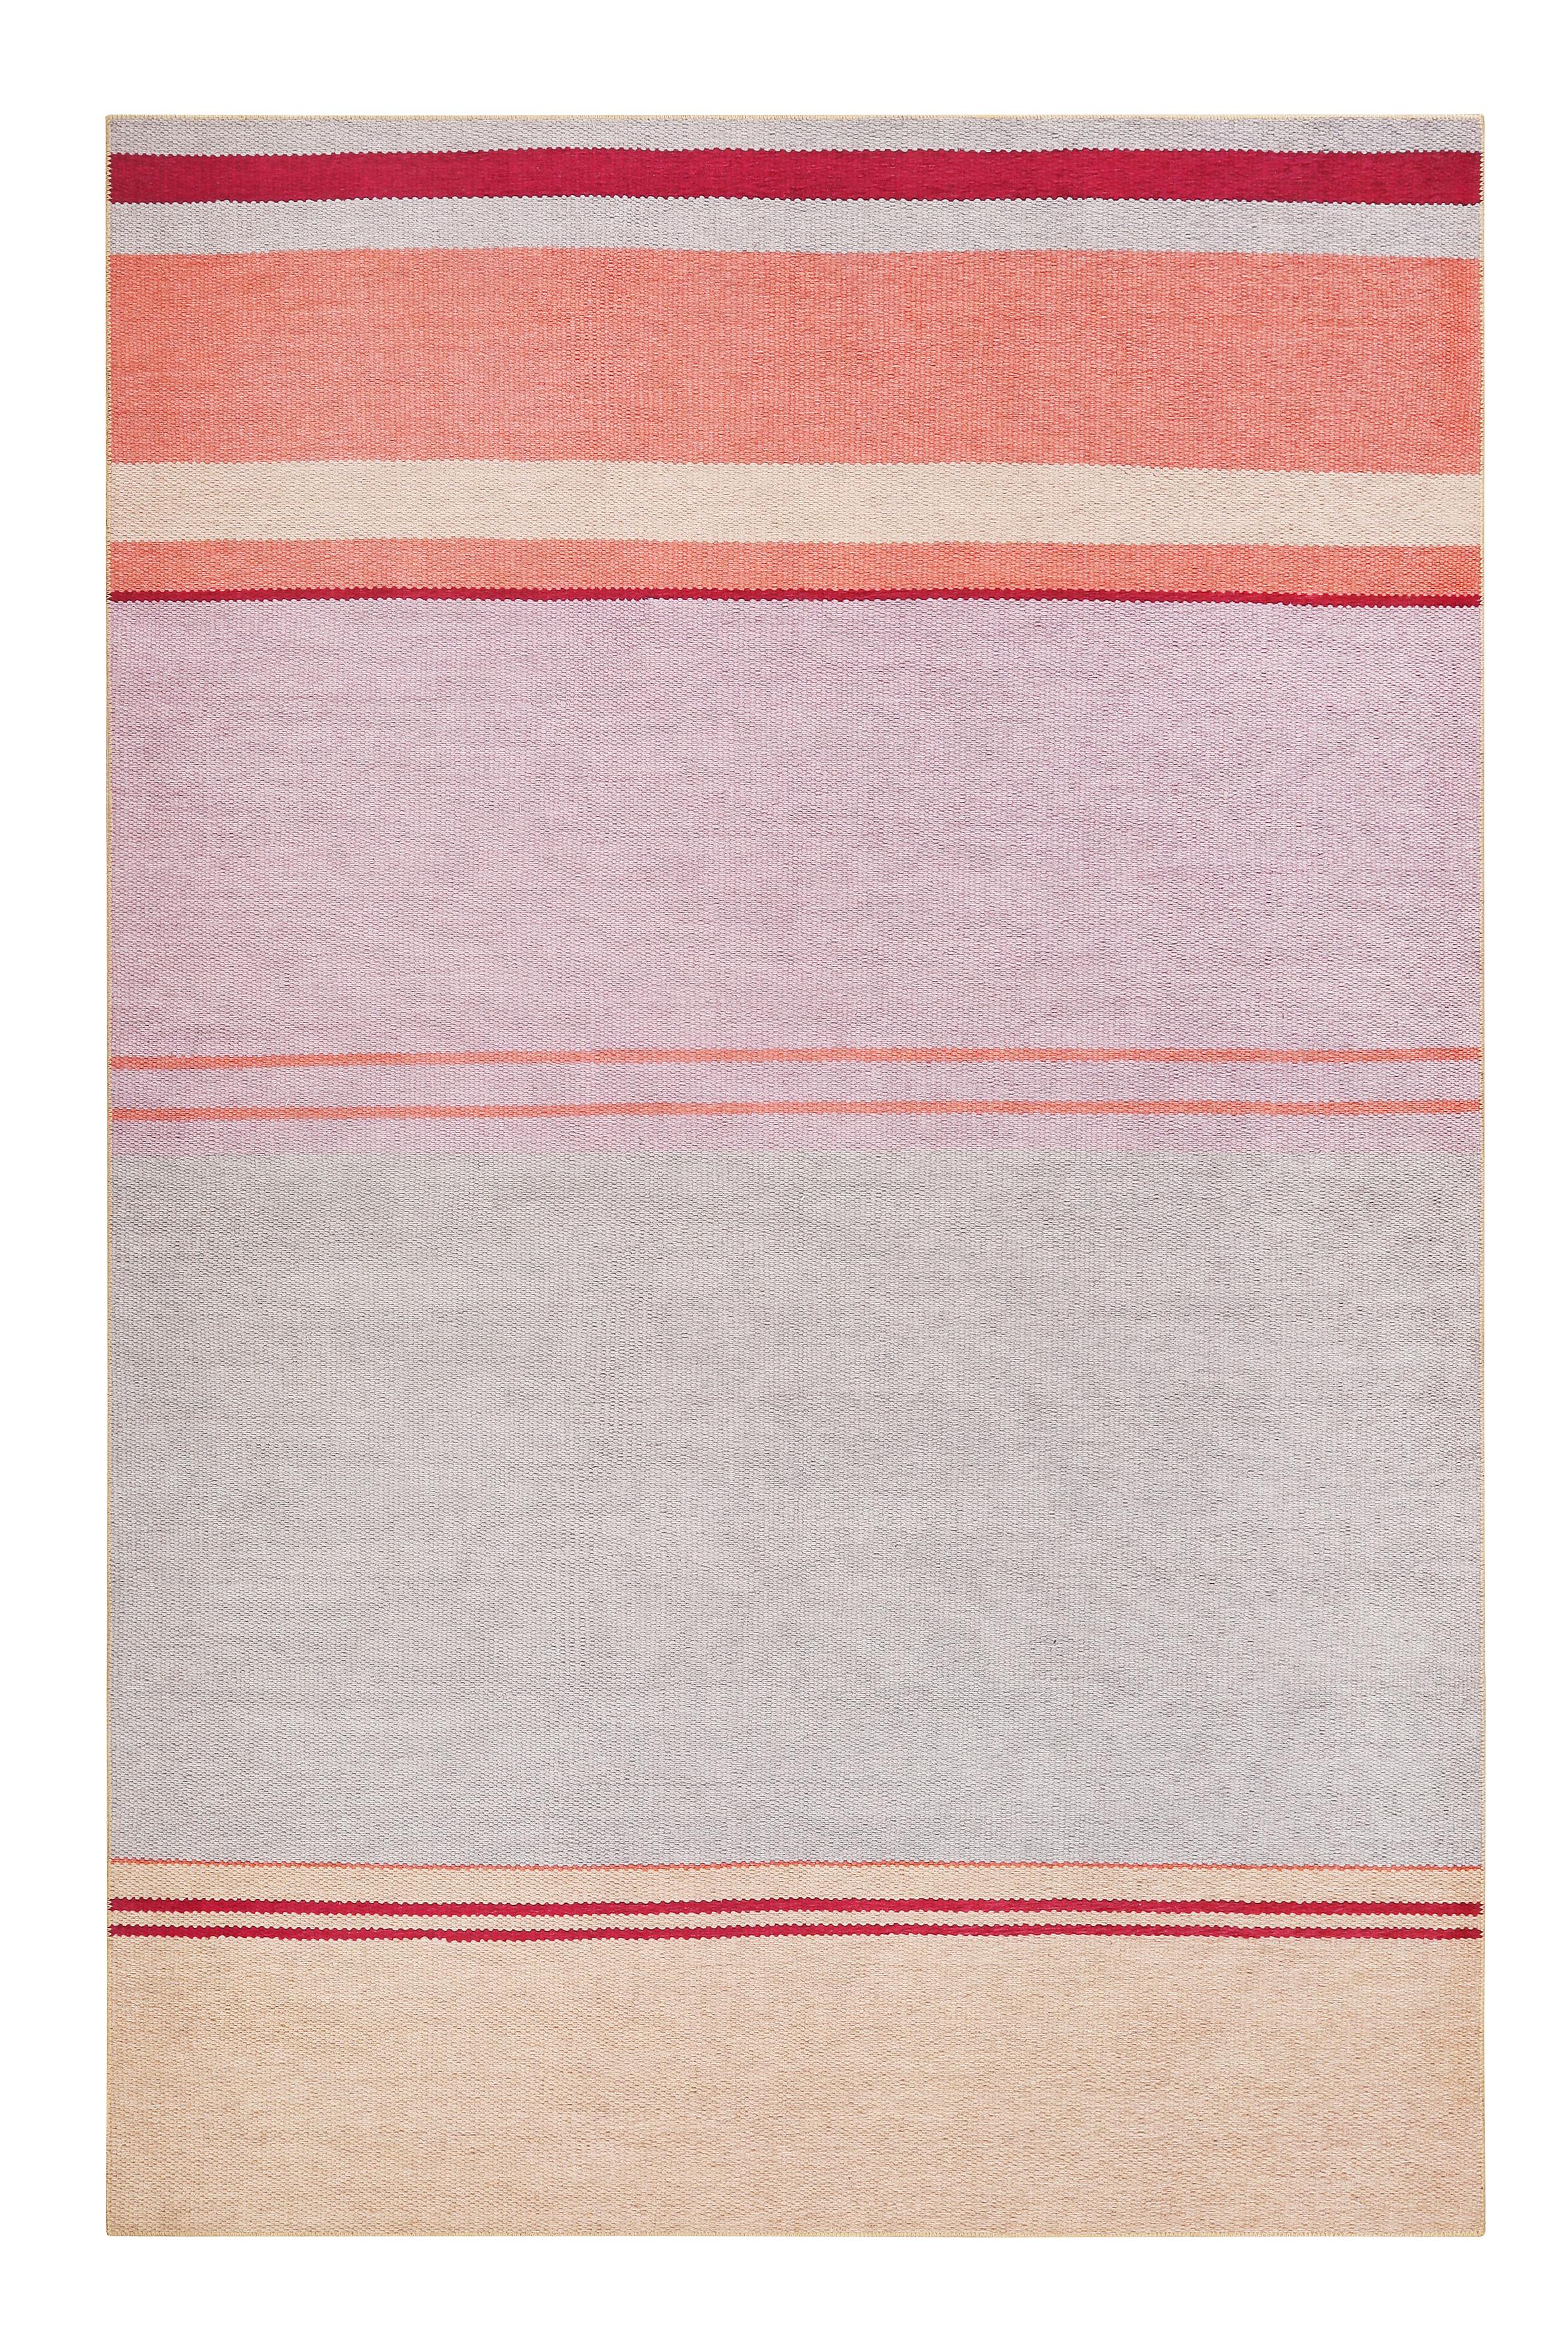 Webteppich Grau/Orange/Rosa Cleft 120x170 cm - Beige/Orange, KONVENTIONELL, Textil (120/170cm) - Esprit